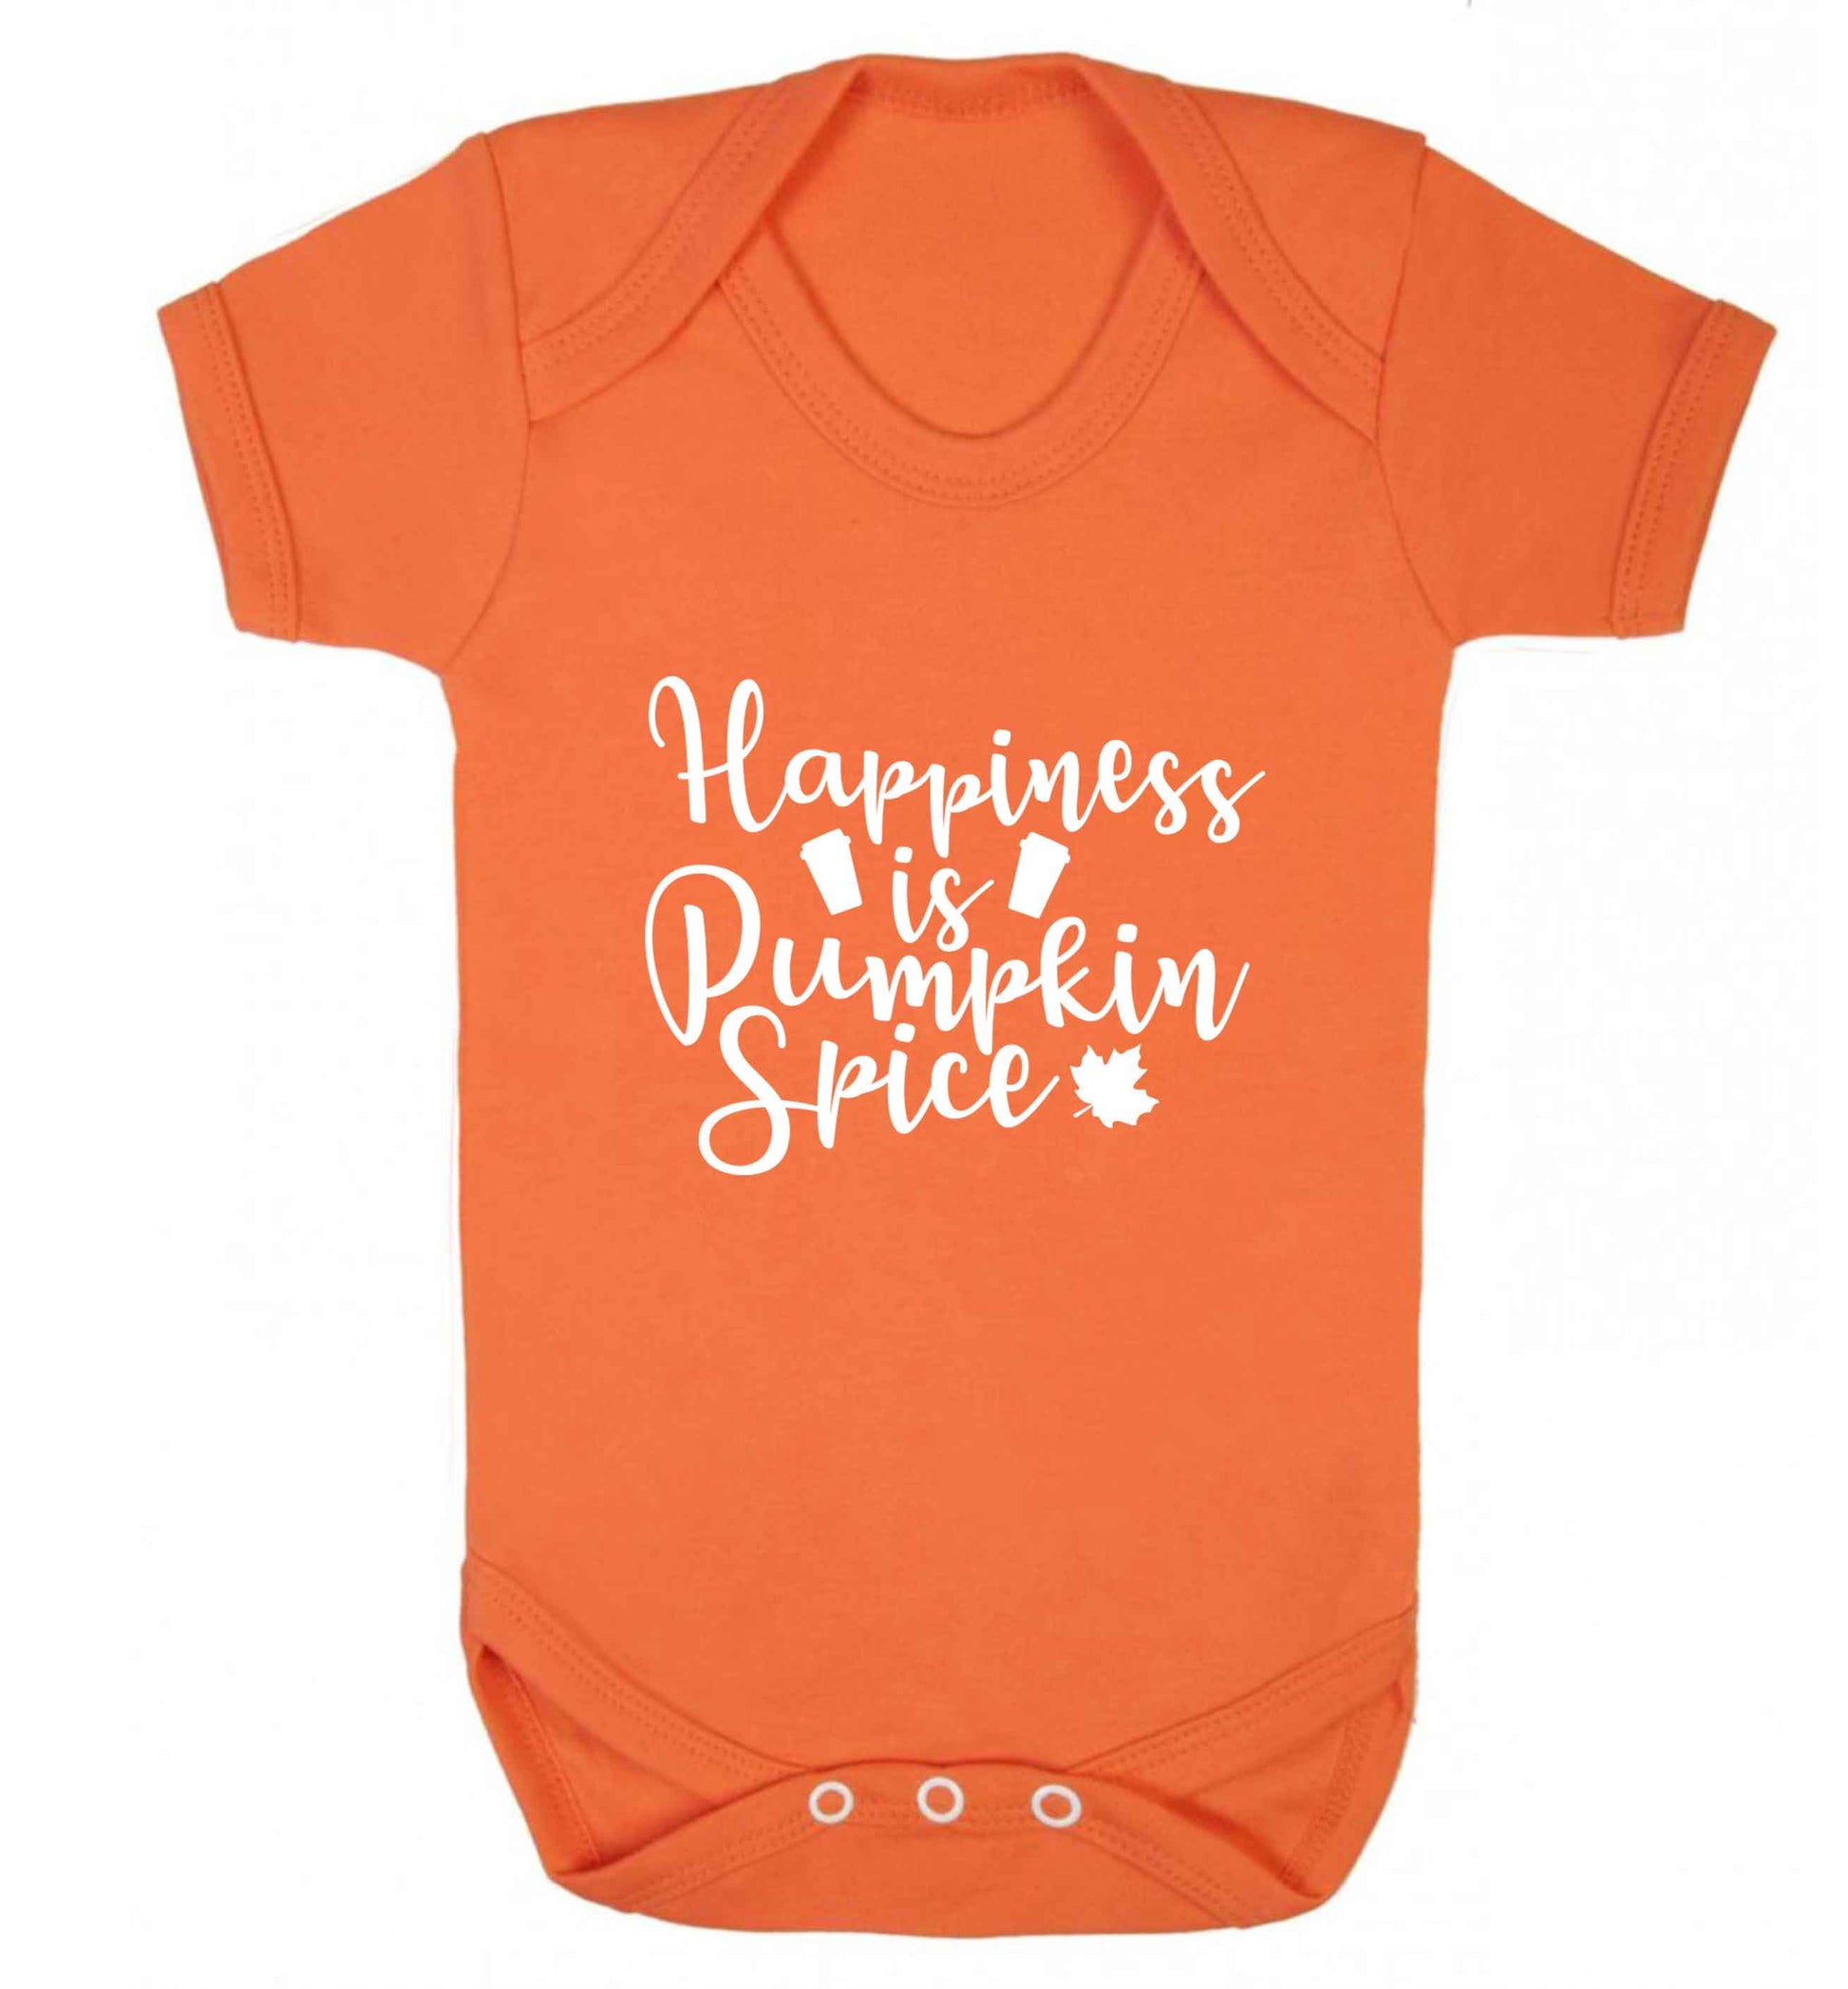 Happiness Pumpkin Spice baby vest orange 18-24 months